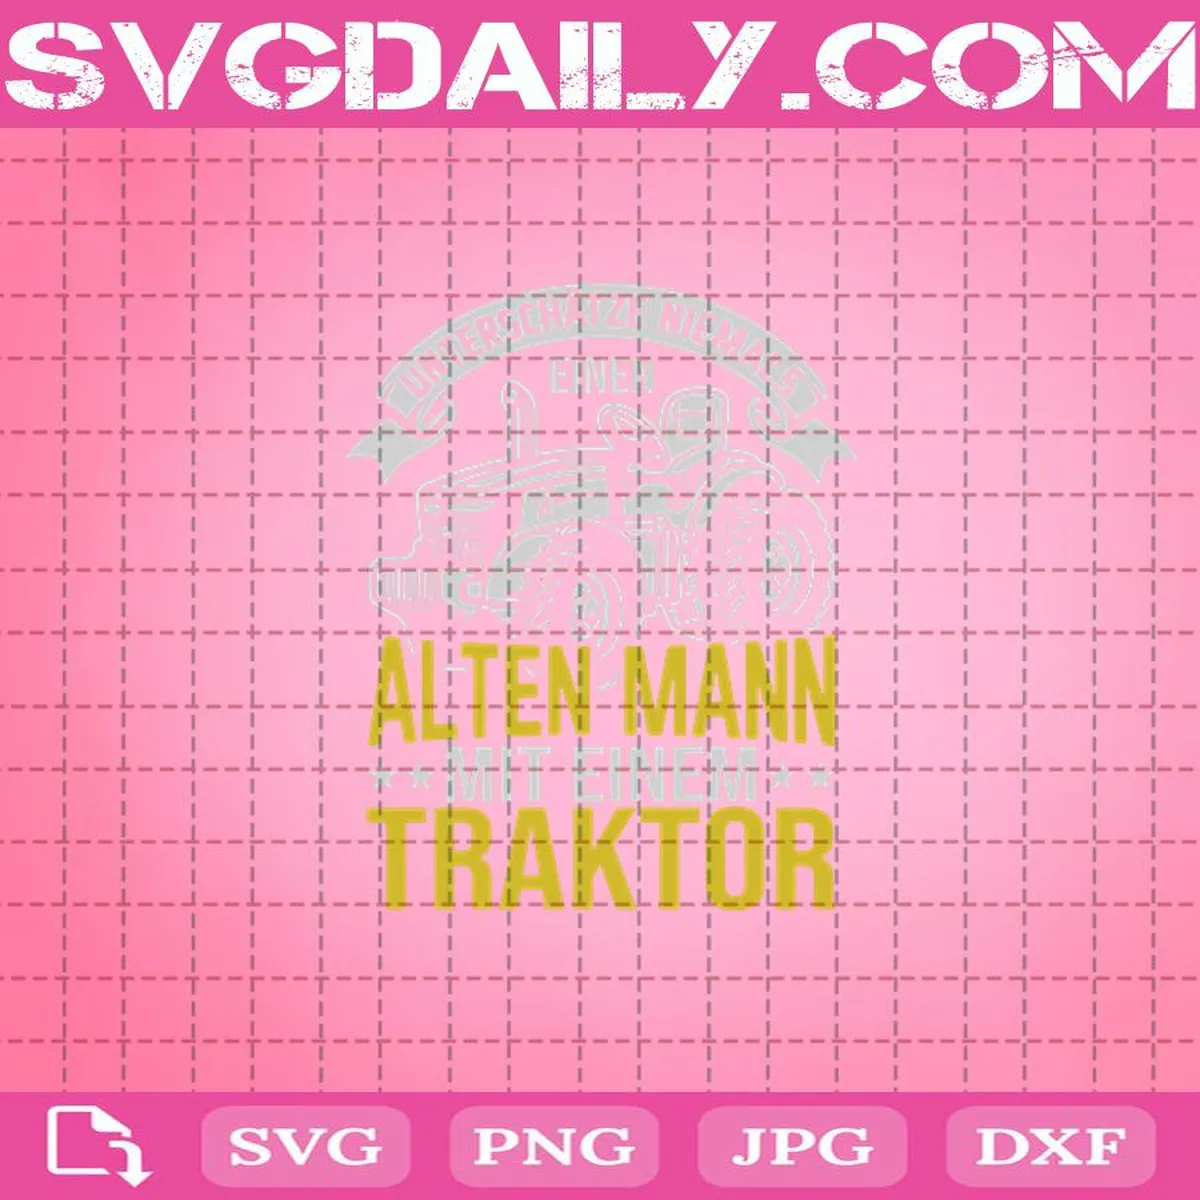 Unterschätze Niemals Einen Alten Mann Svg, Alten Mann Svg, Traktor Svg, Svg Png Dxf Eps AI Instant Download